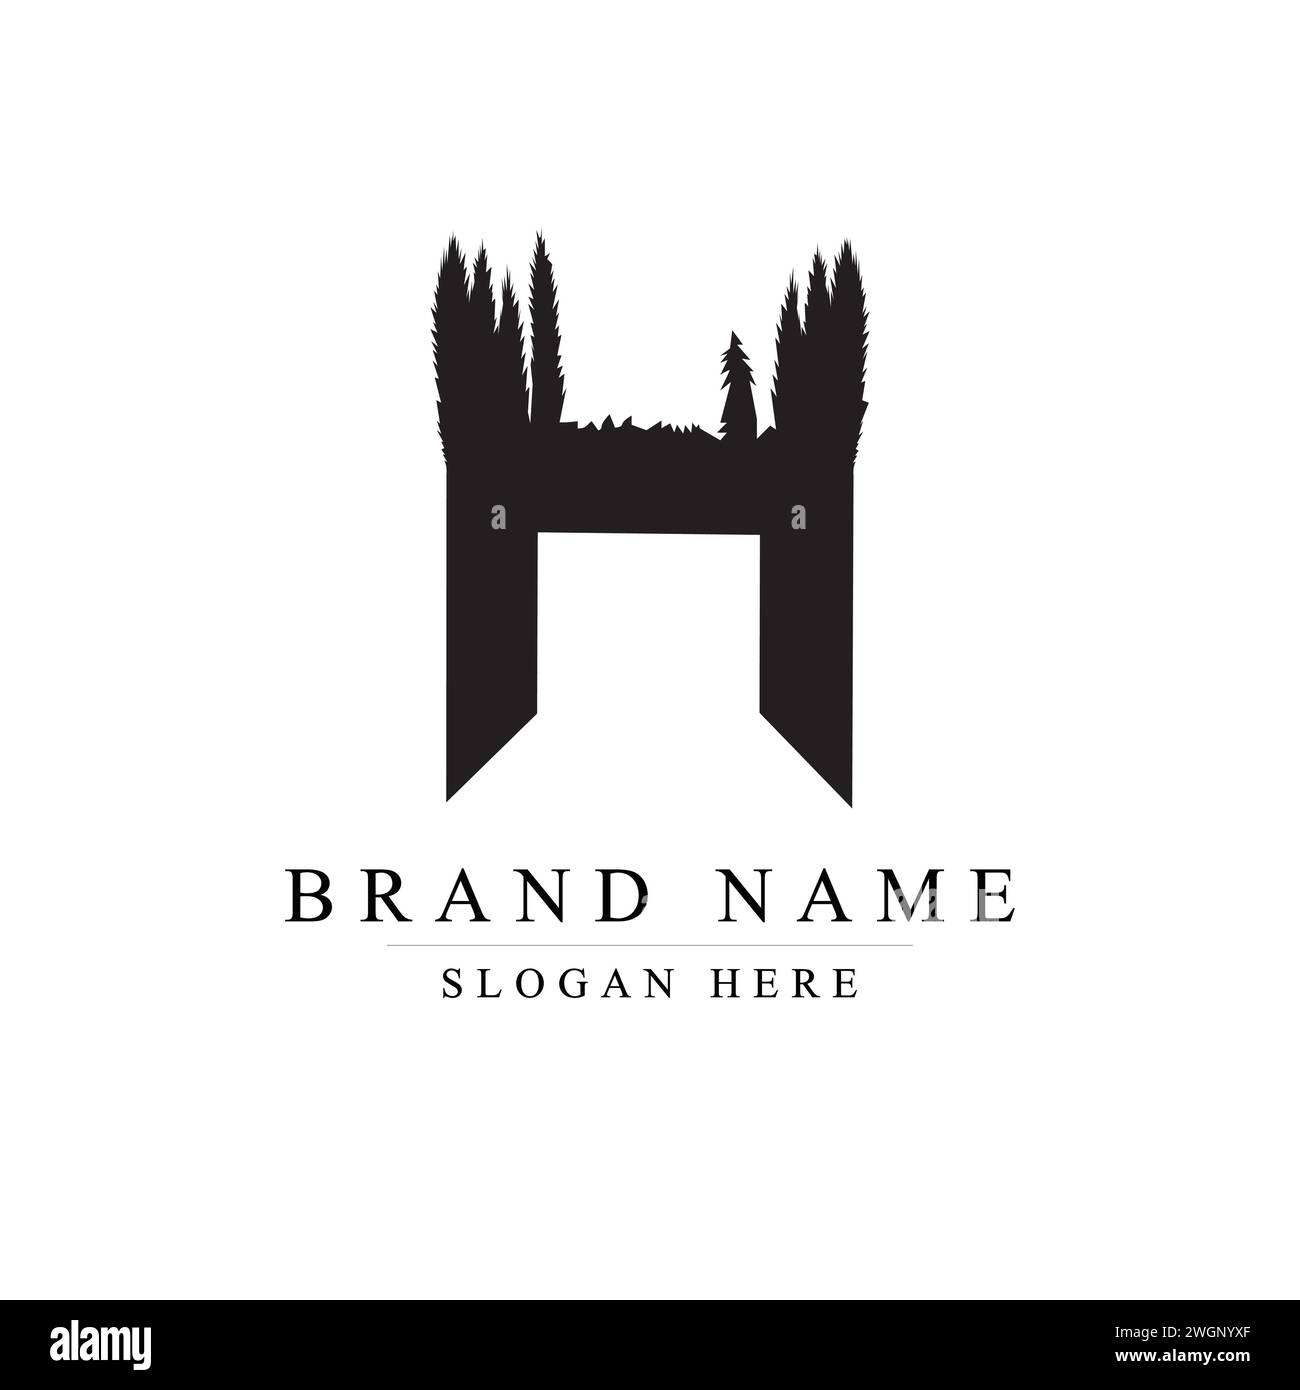 Das vom Baum inspirierte H-Logo für Premium-Marken, das vom Baum inspirierte H-Logo für Premium-Marken Stock Vektor